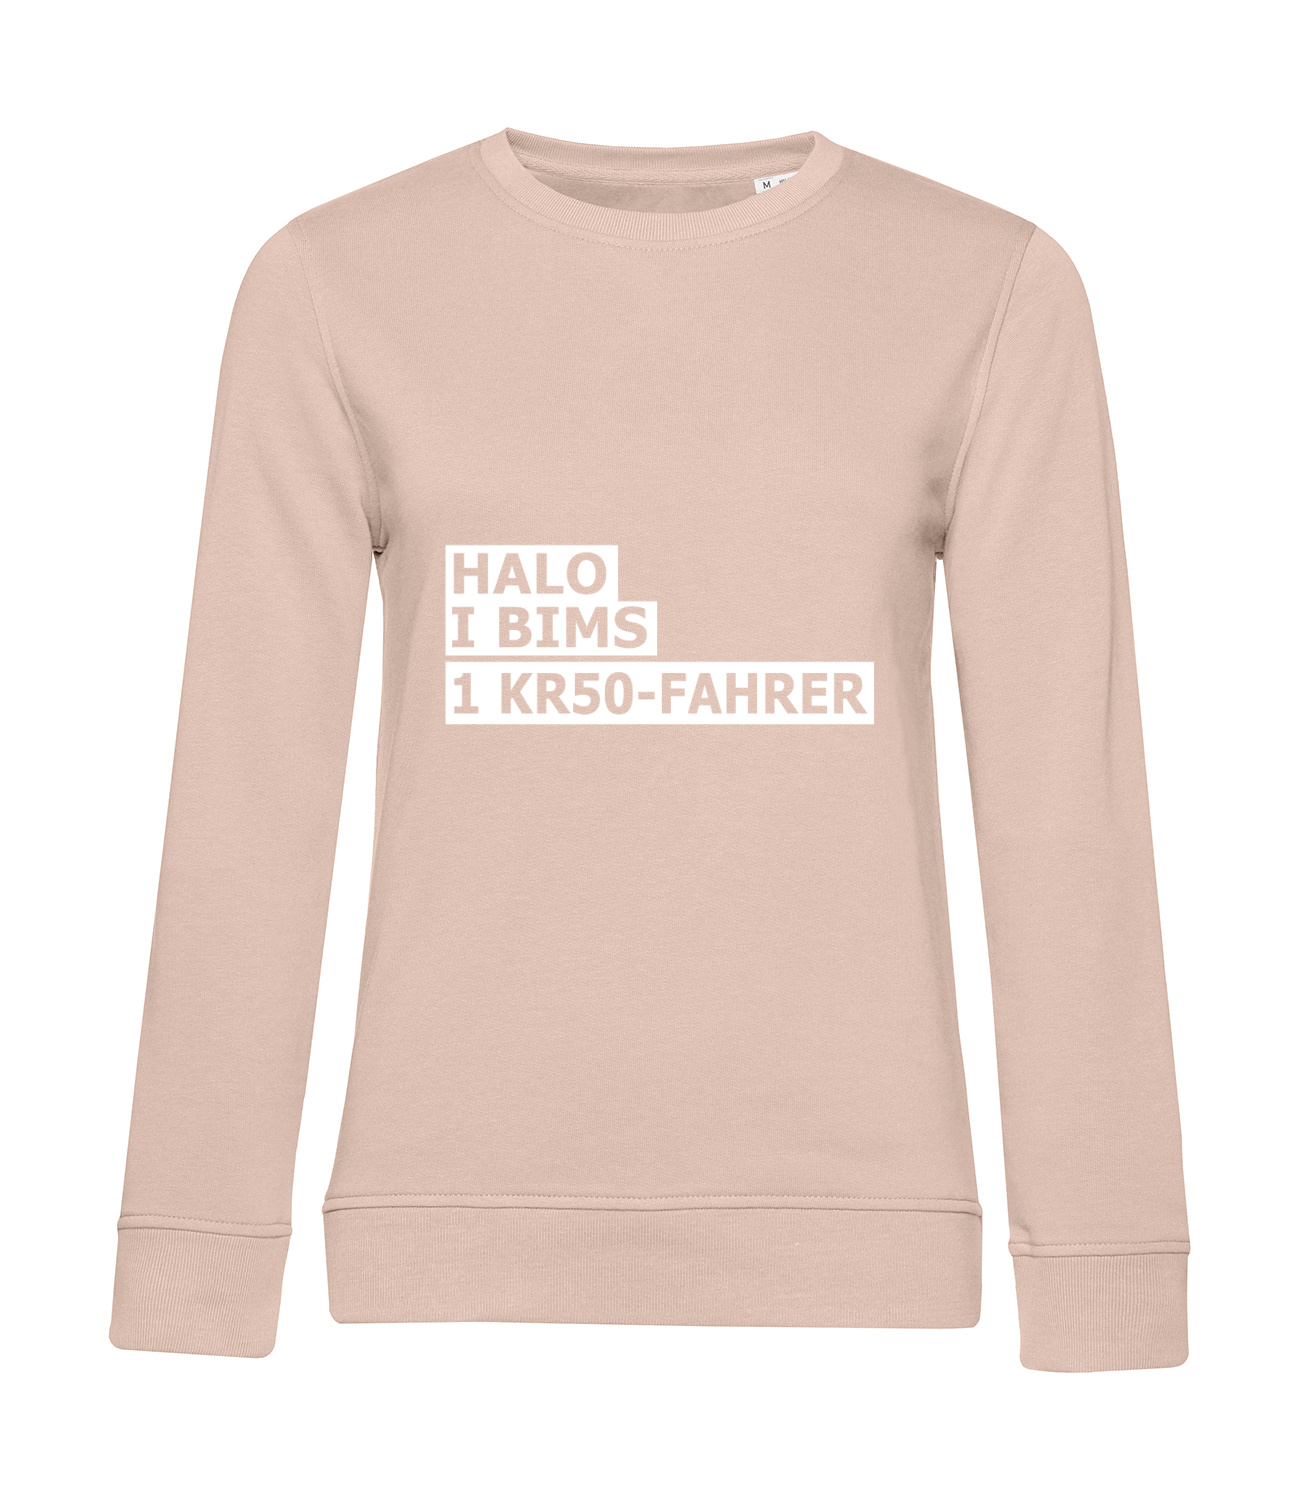 Nachhaltiges Sweatshirt Damen 2Takter - Halo I bims 1 KR50-Fahrer